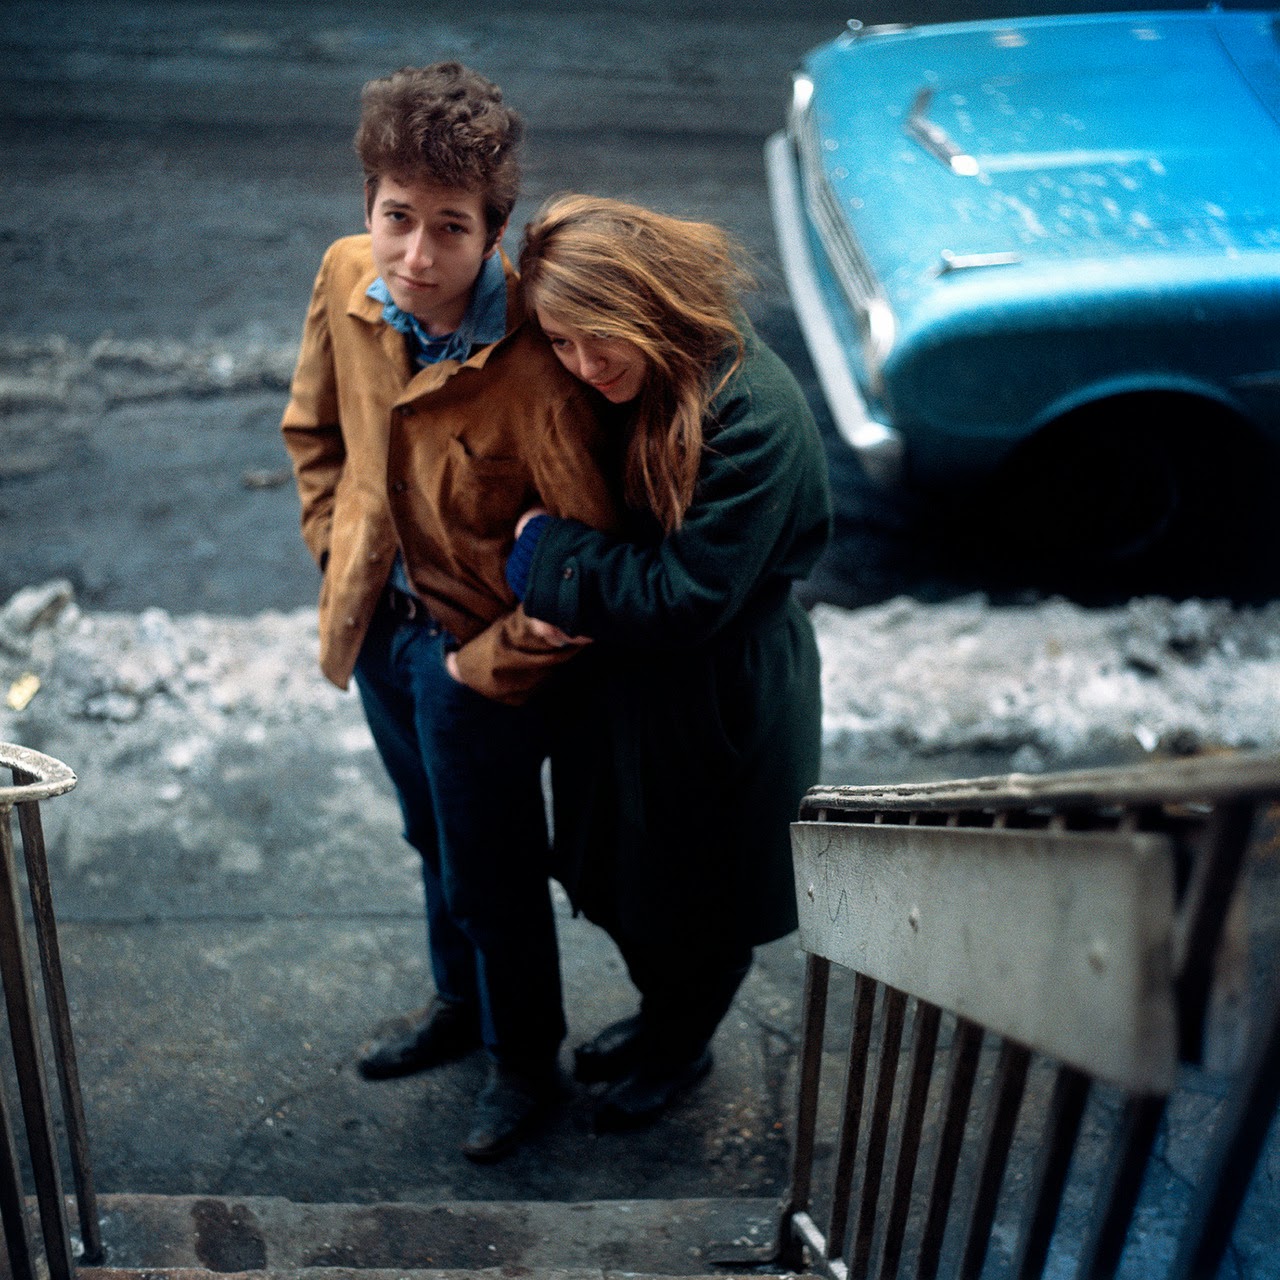 La sesión de fotos de la icónica portada de The Freewheelin' Bob Dylan –  Dylanitas